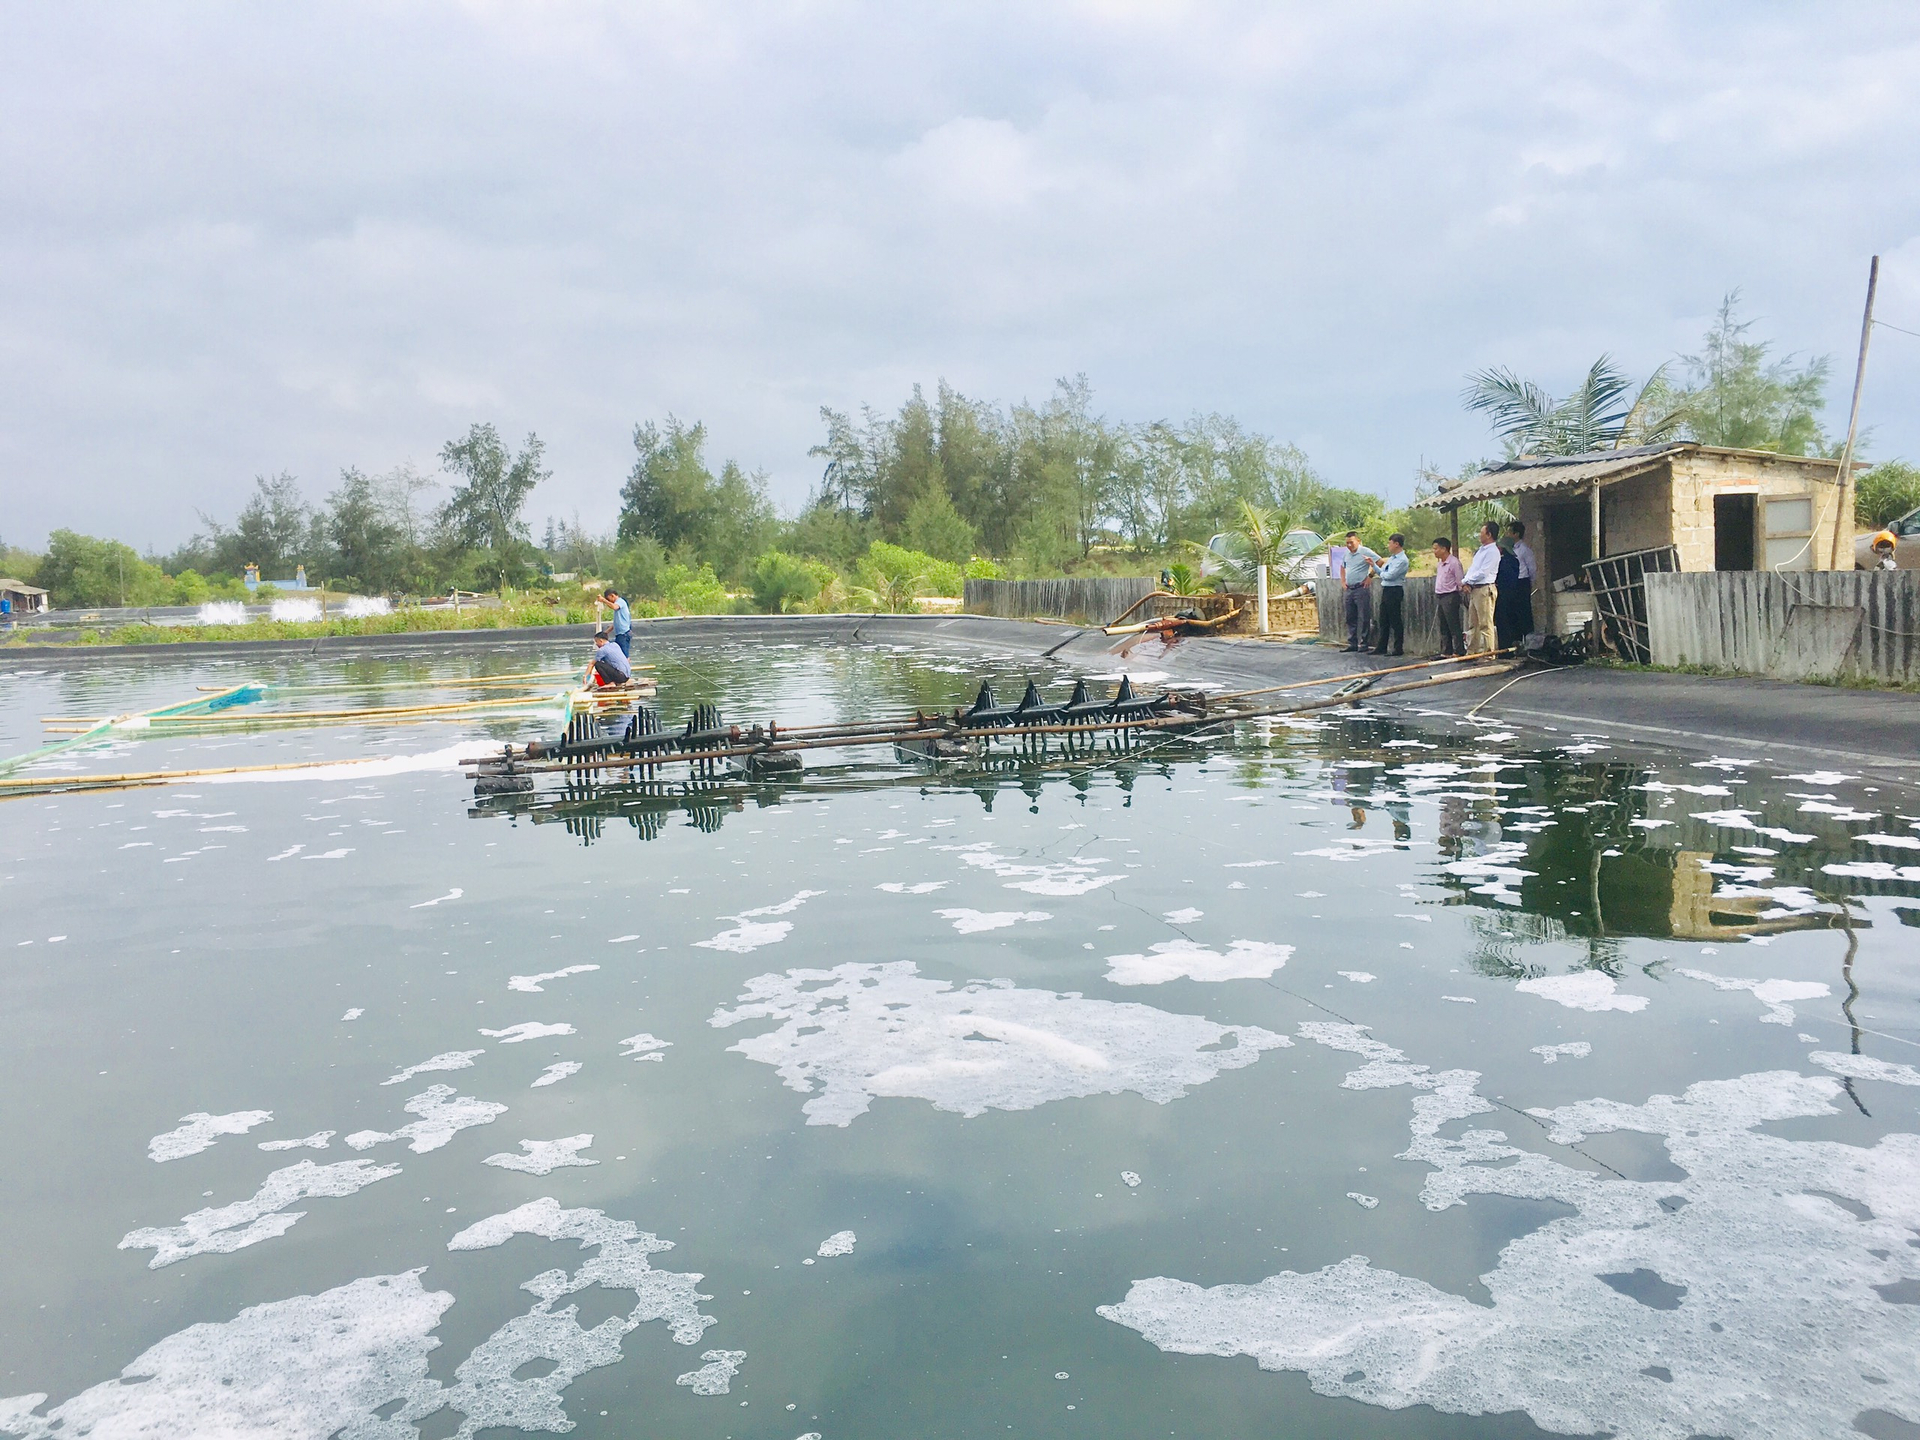 Mô hình mở ra hướng đi mới cho người nuôi thủy sản ở các vùng bãi ngang ven biển tỉnh Quảng Trị. Ảnh: Việt Toàn.